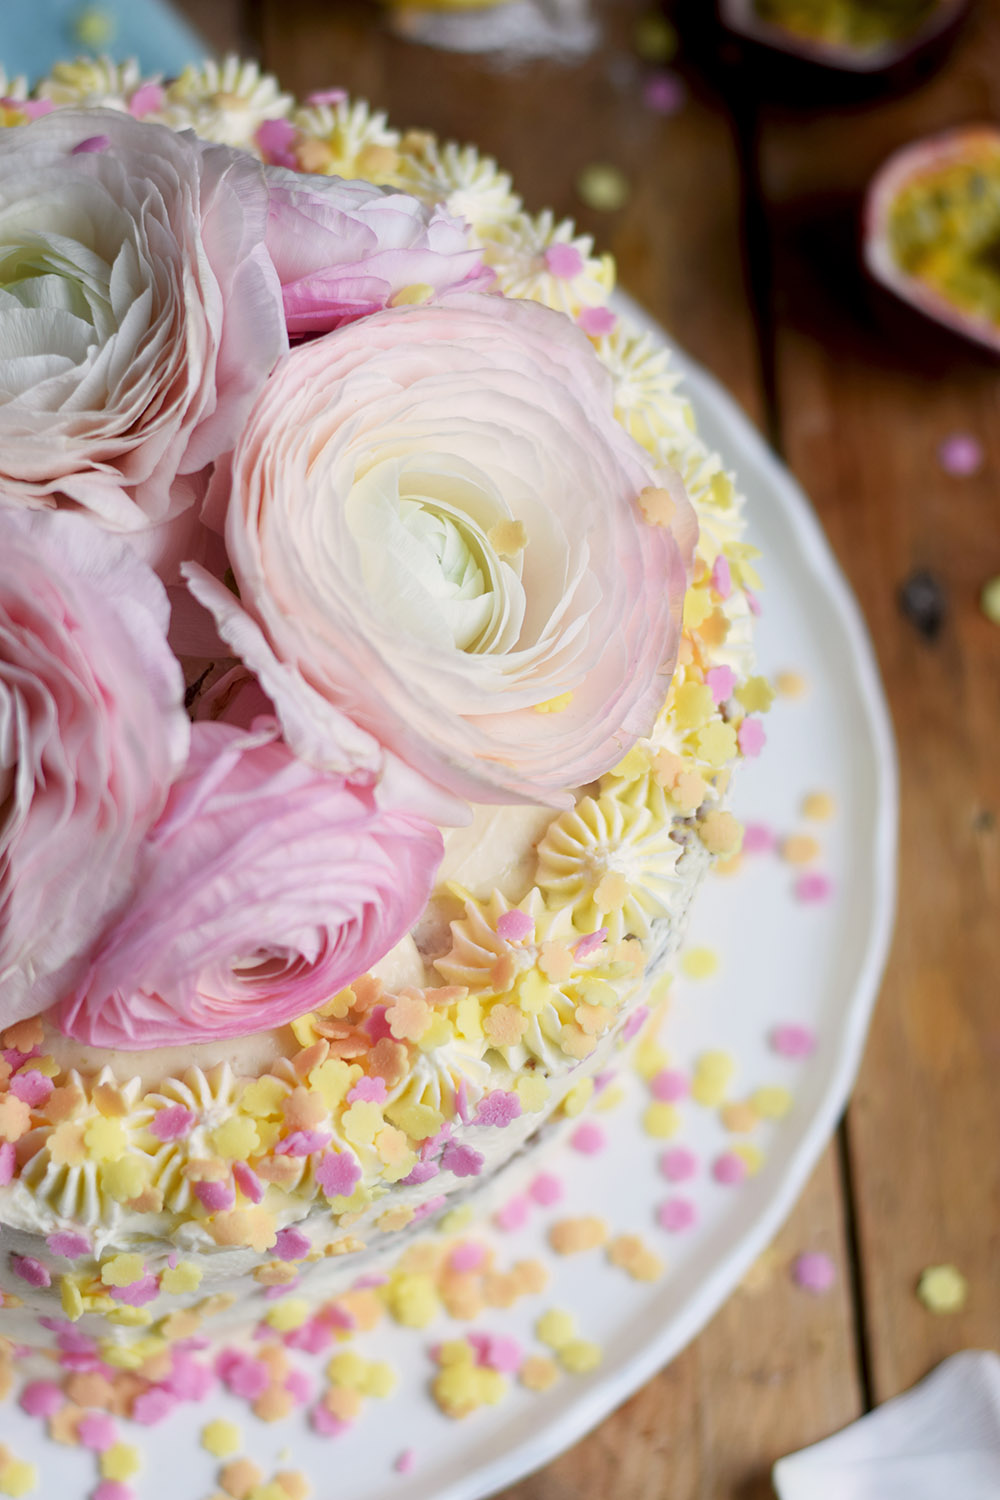 Zitronen Maracuja Torte - Lemon Passion Fruit Cake - Geburtstagstorte - Birthday Cake (10)